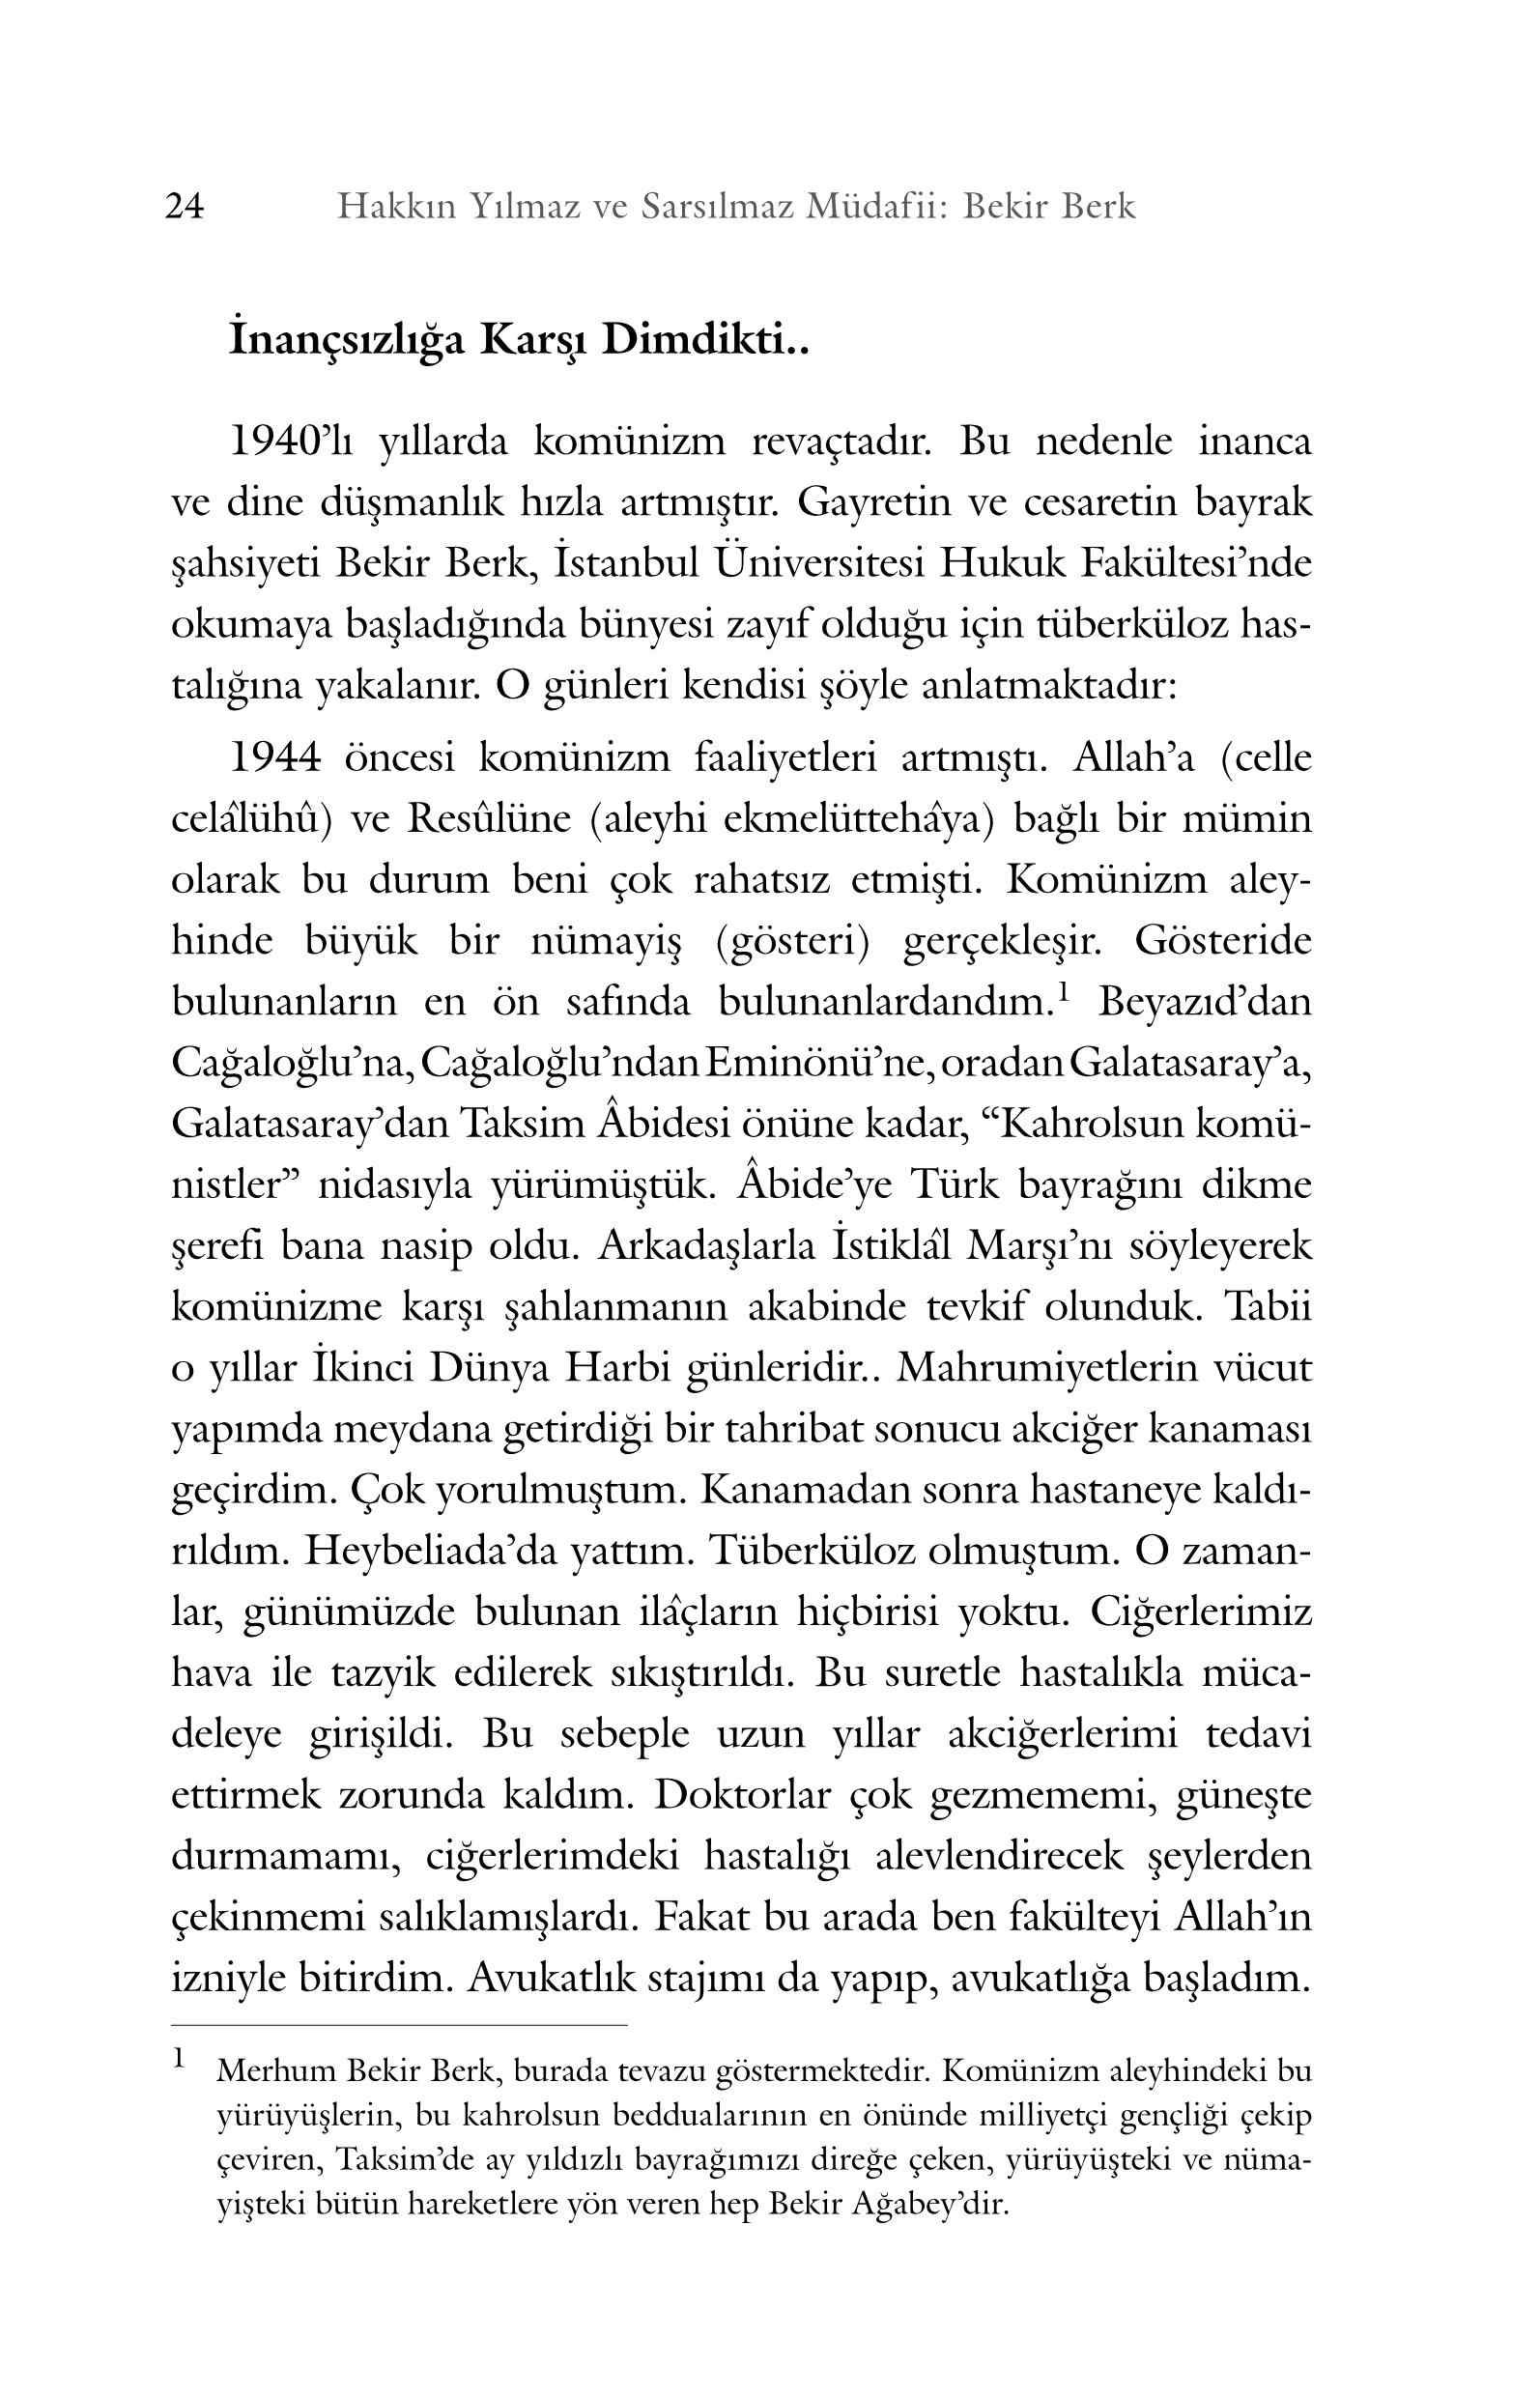 Necmettin Sahiner - Bekir Berk (Hakkin Yilmaz ve Sarsilmaz Müdafii) - SahdamarY.pdf, 265-Sayfa 